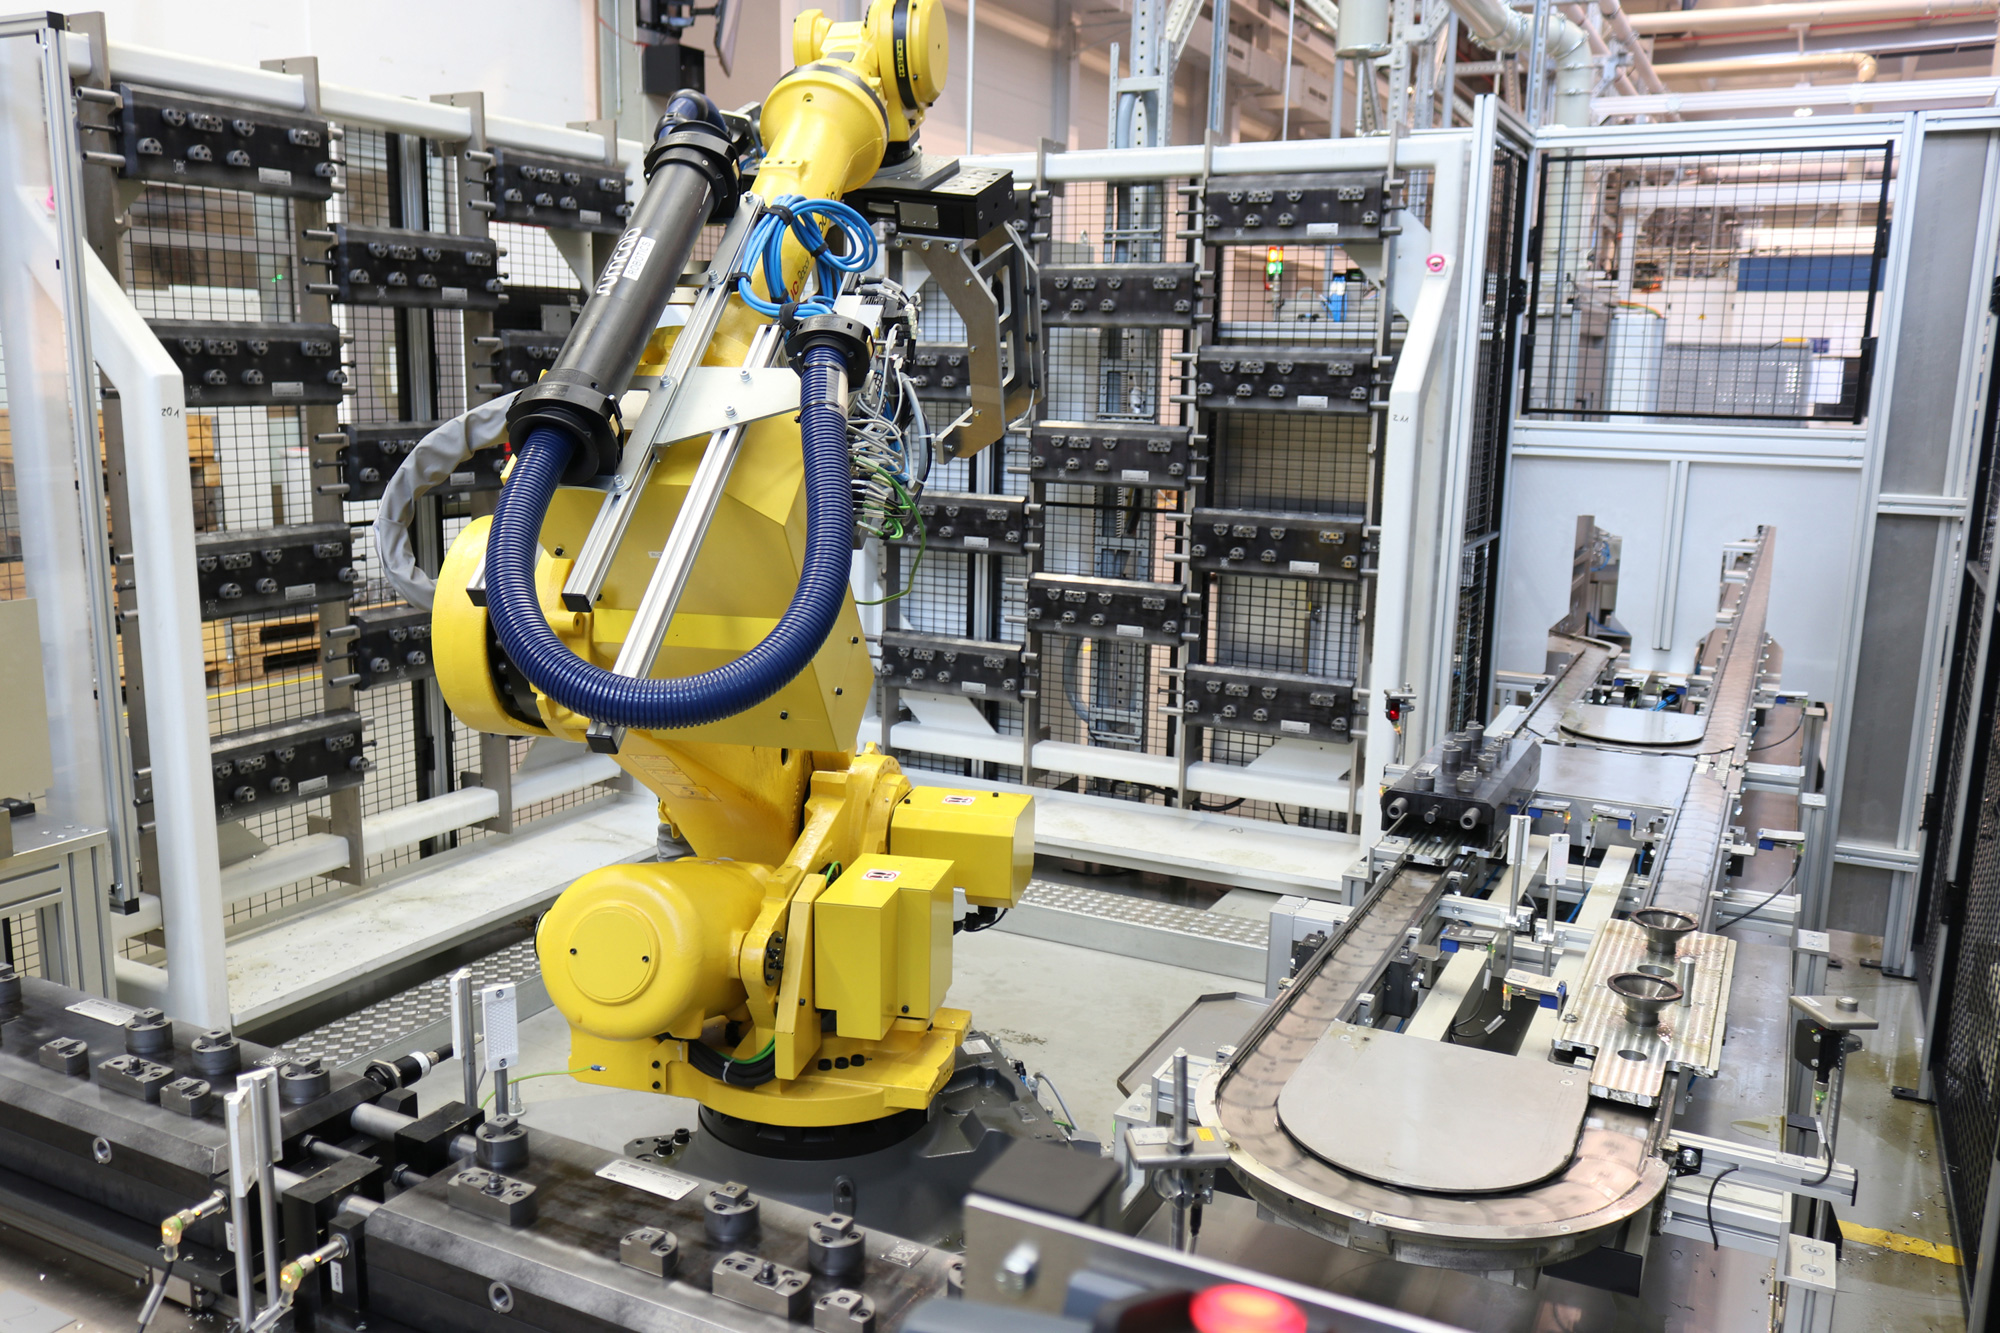 Roboterzelle mit Bandsystem und Pufferregalen zur Abkühlung und Ablage der Bauteile <i>(Bildquelle: Schnaithmann)</i>